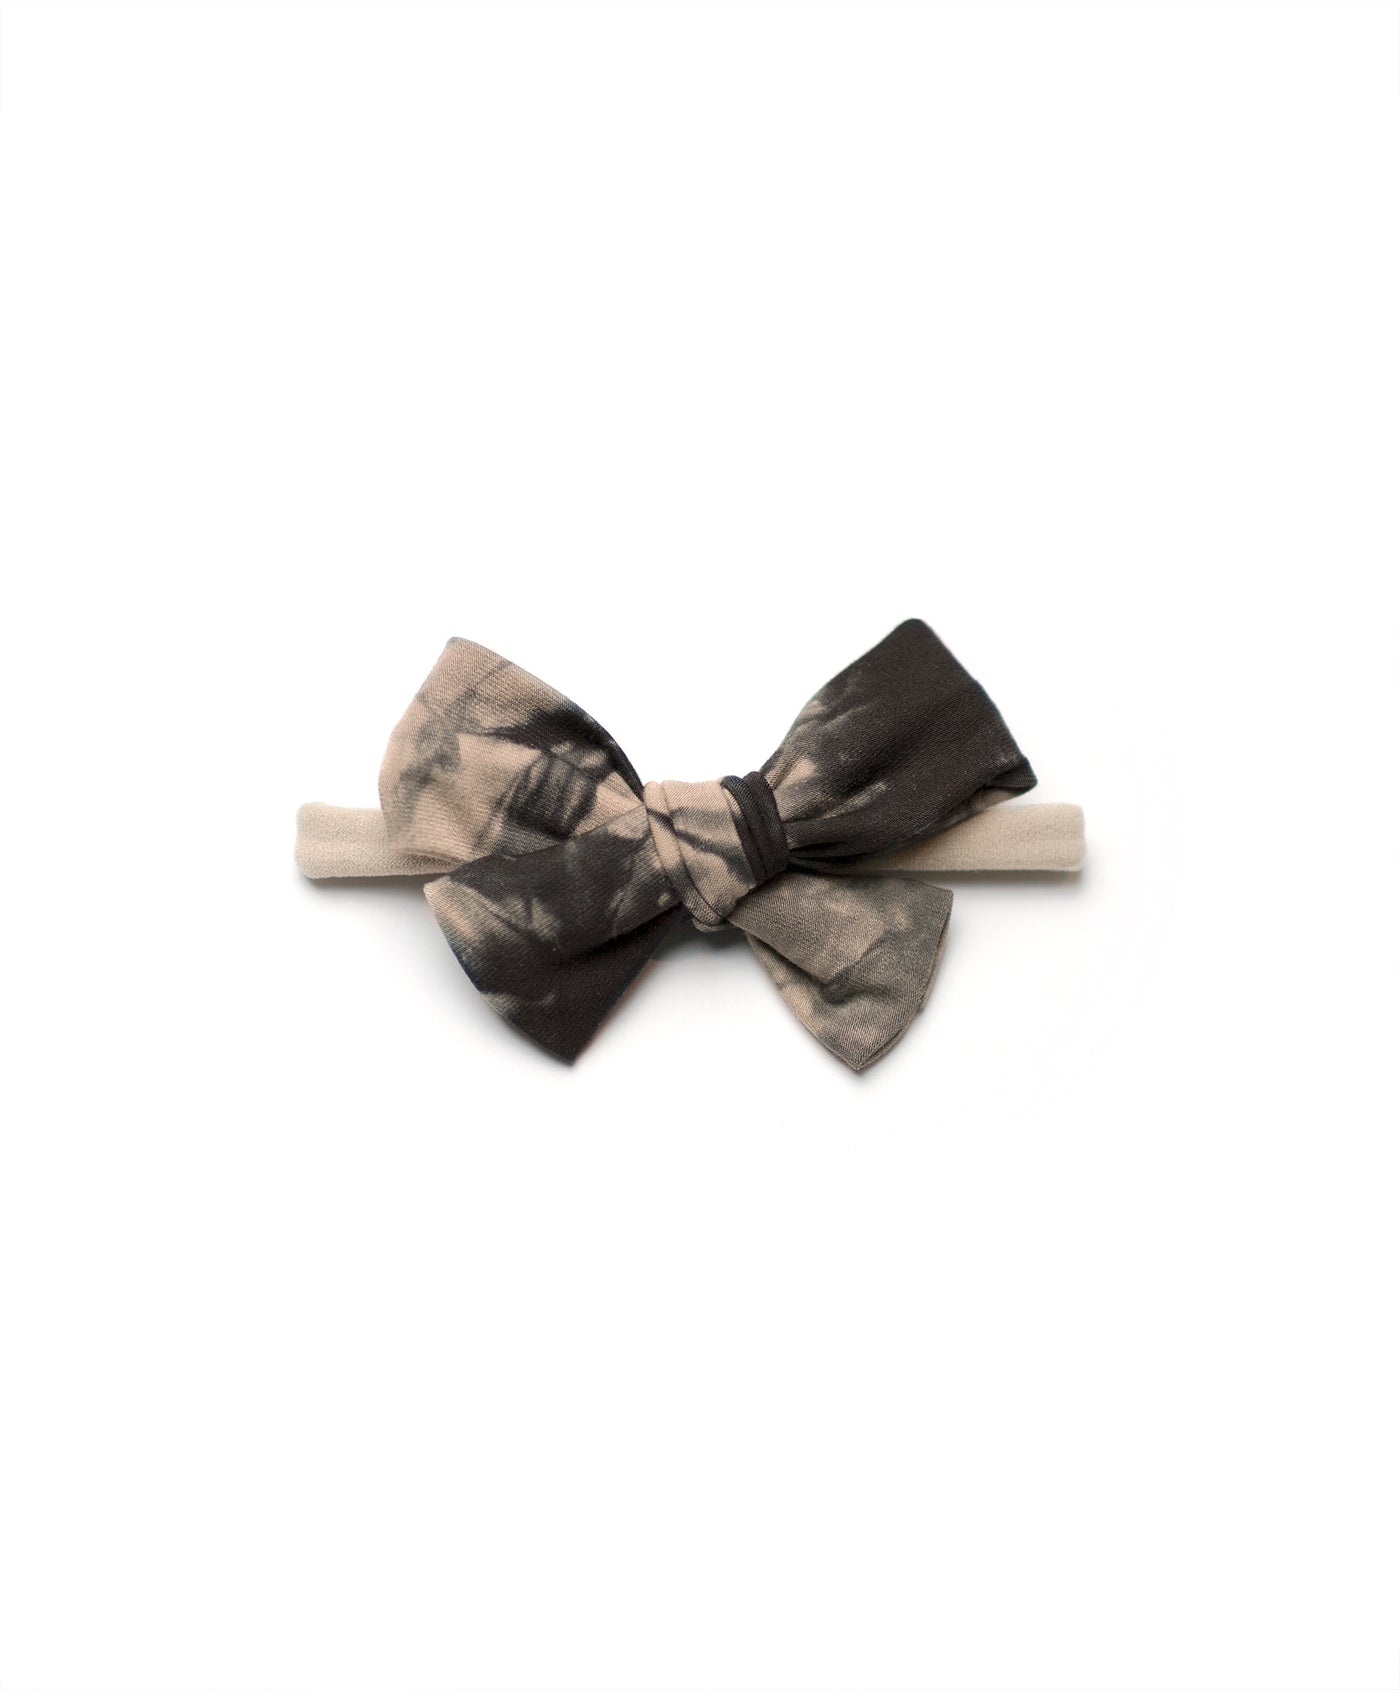 Black & Tan Tie Dye Bow